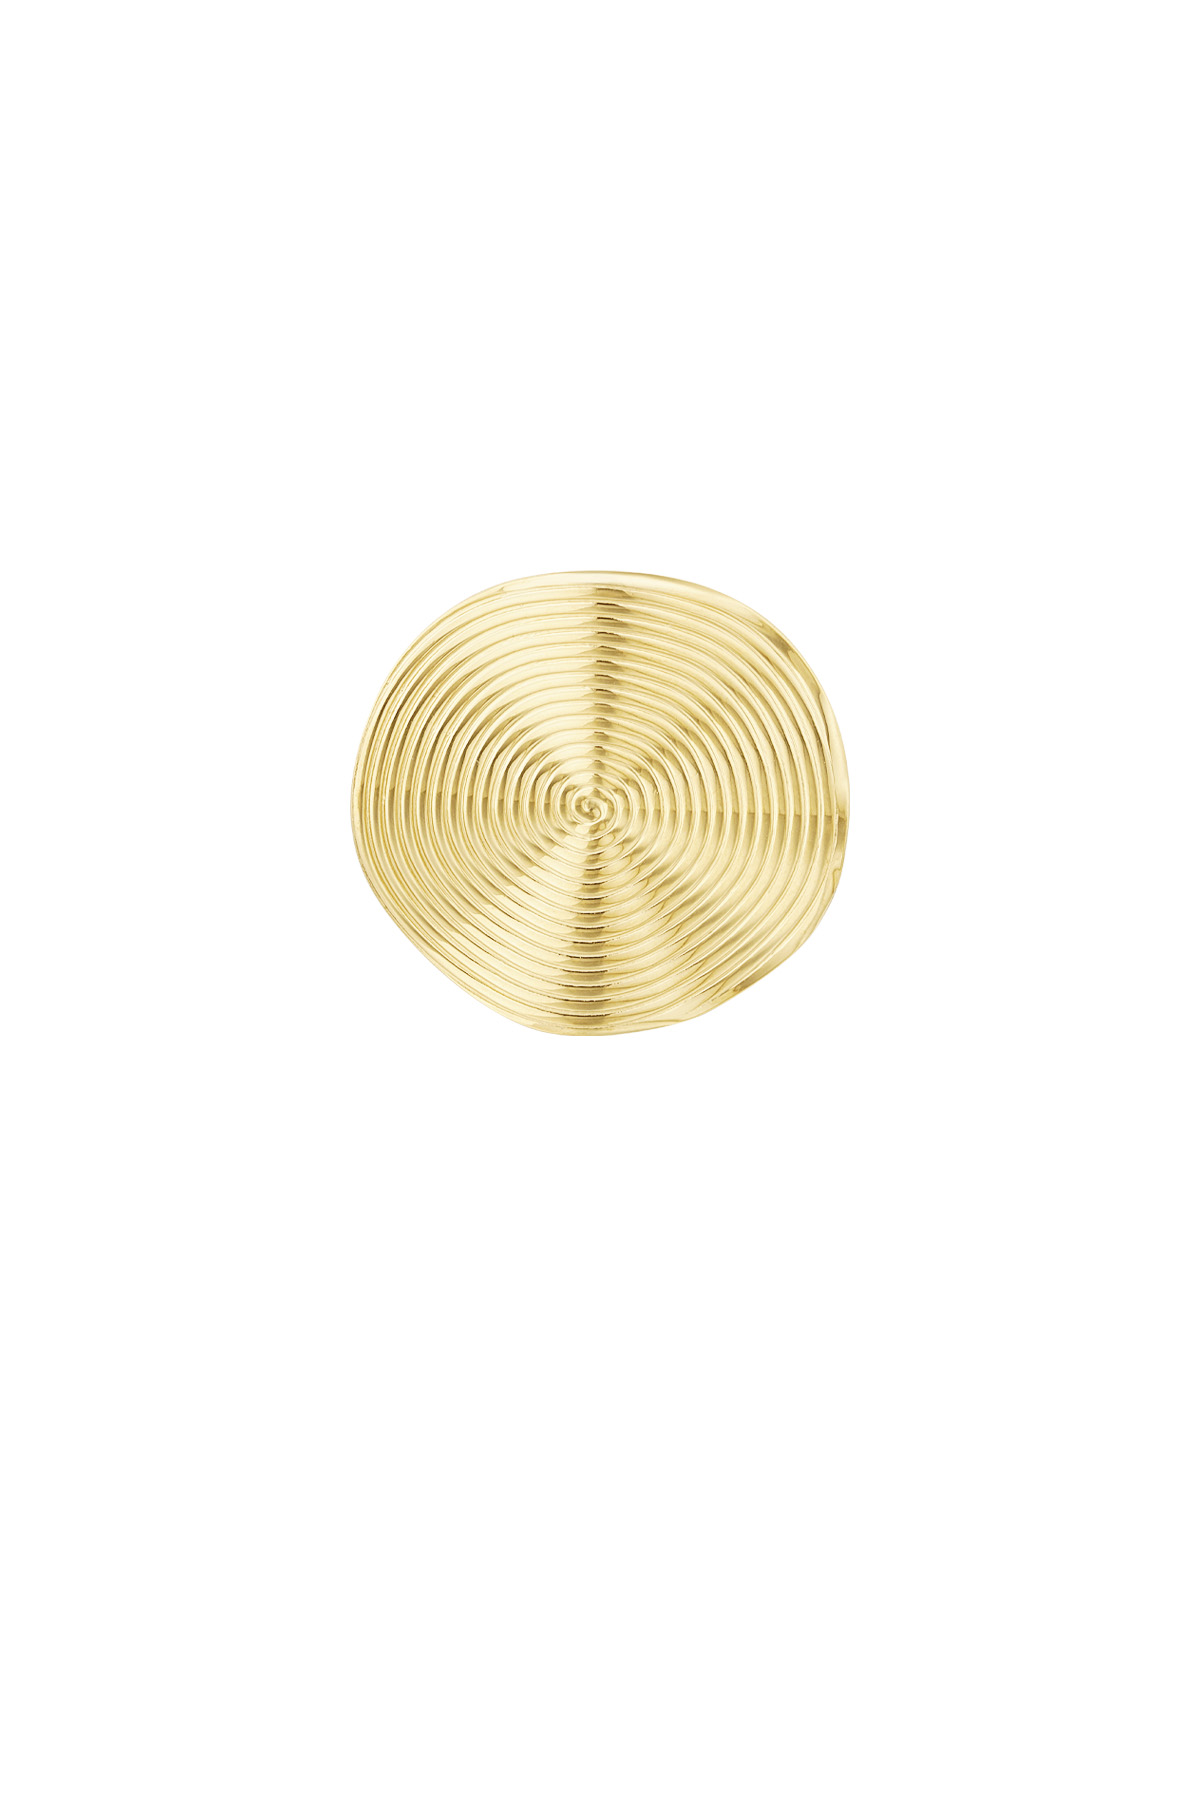 Ring met rond patroon - goud h5 